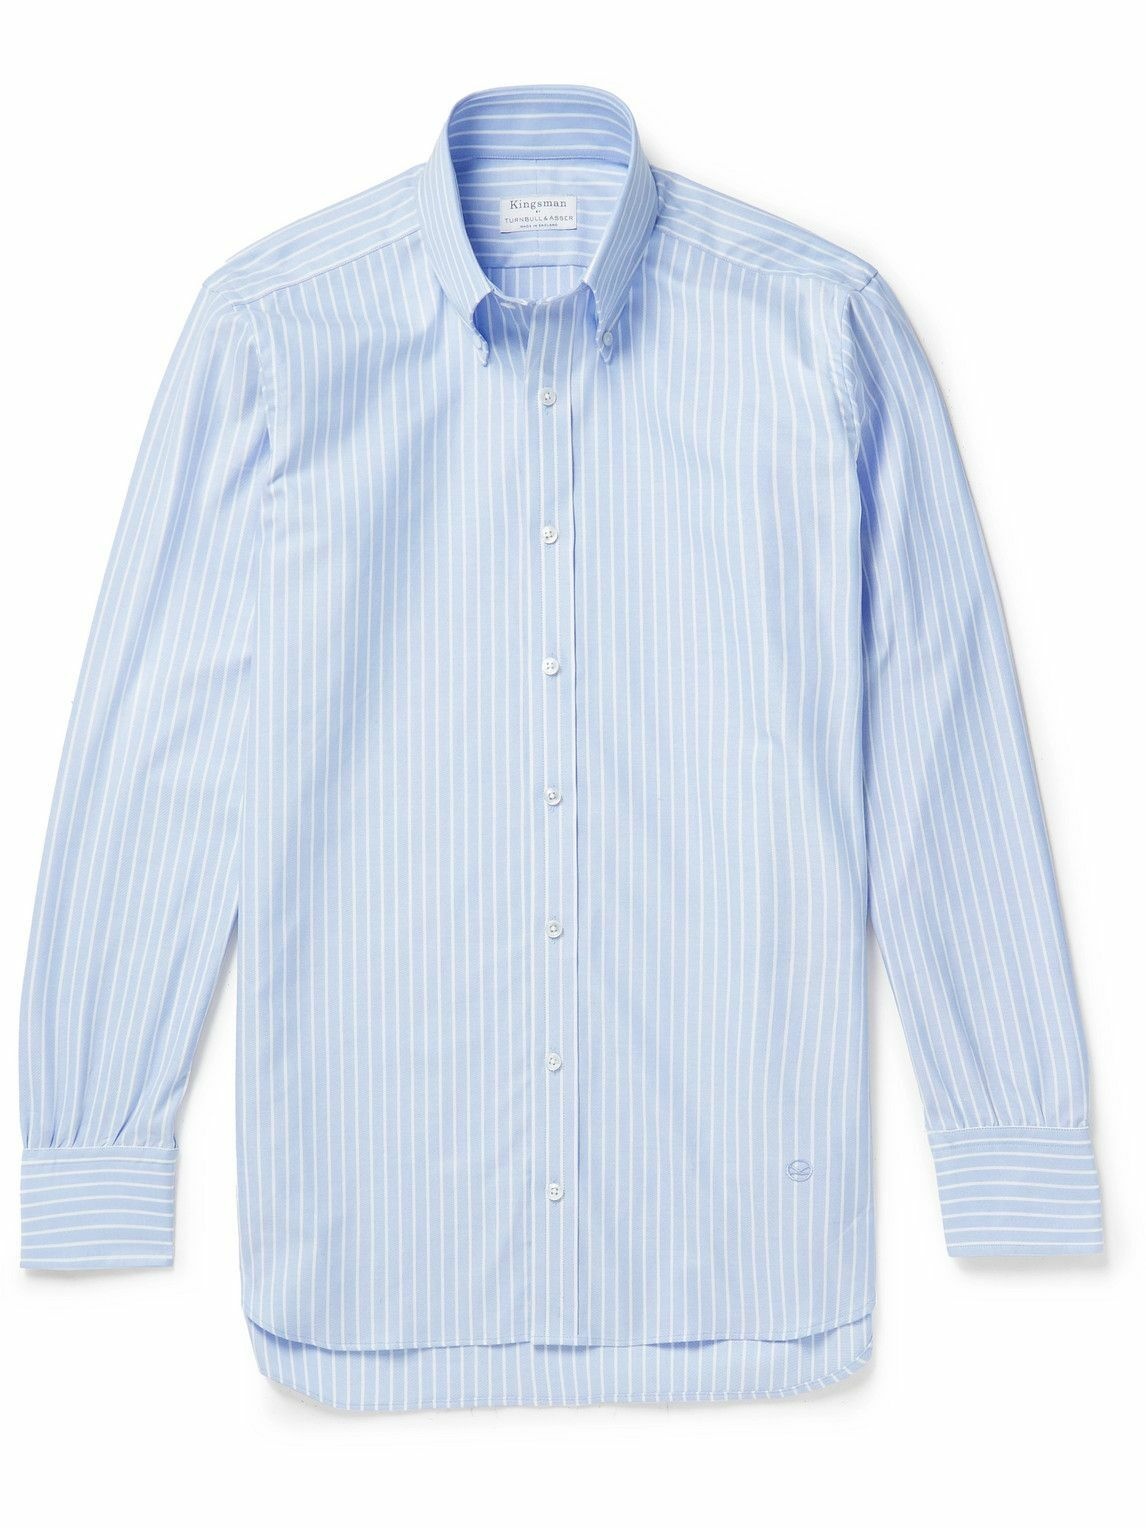 Photo: Kingsman - Button-Down Collar Striped Cotton Oxford Shirt - Blue